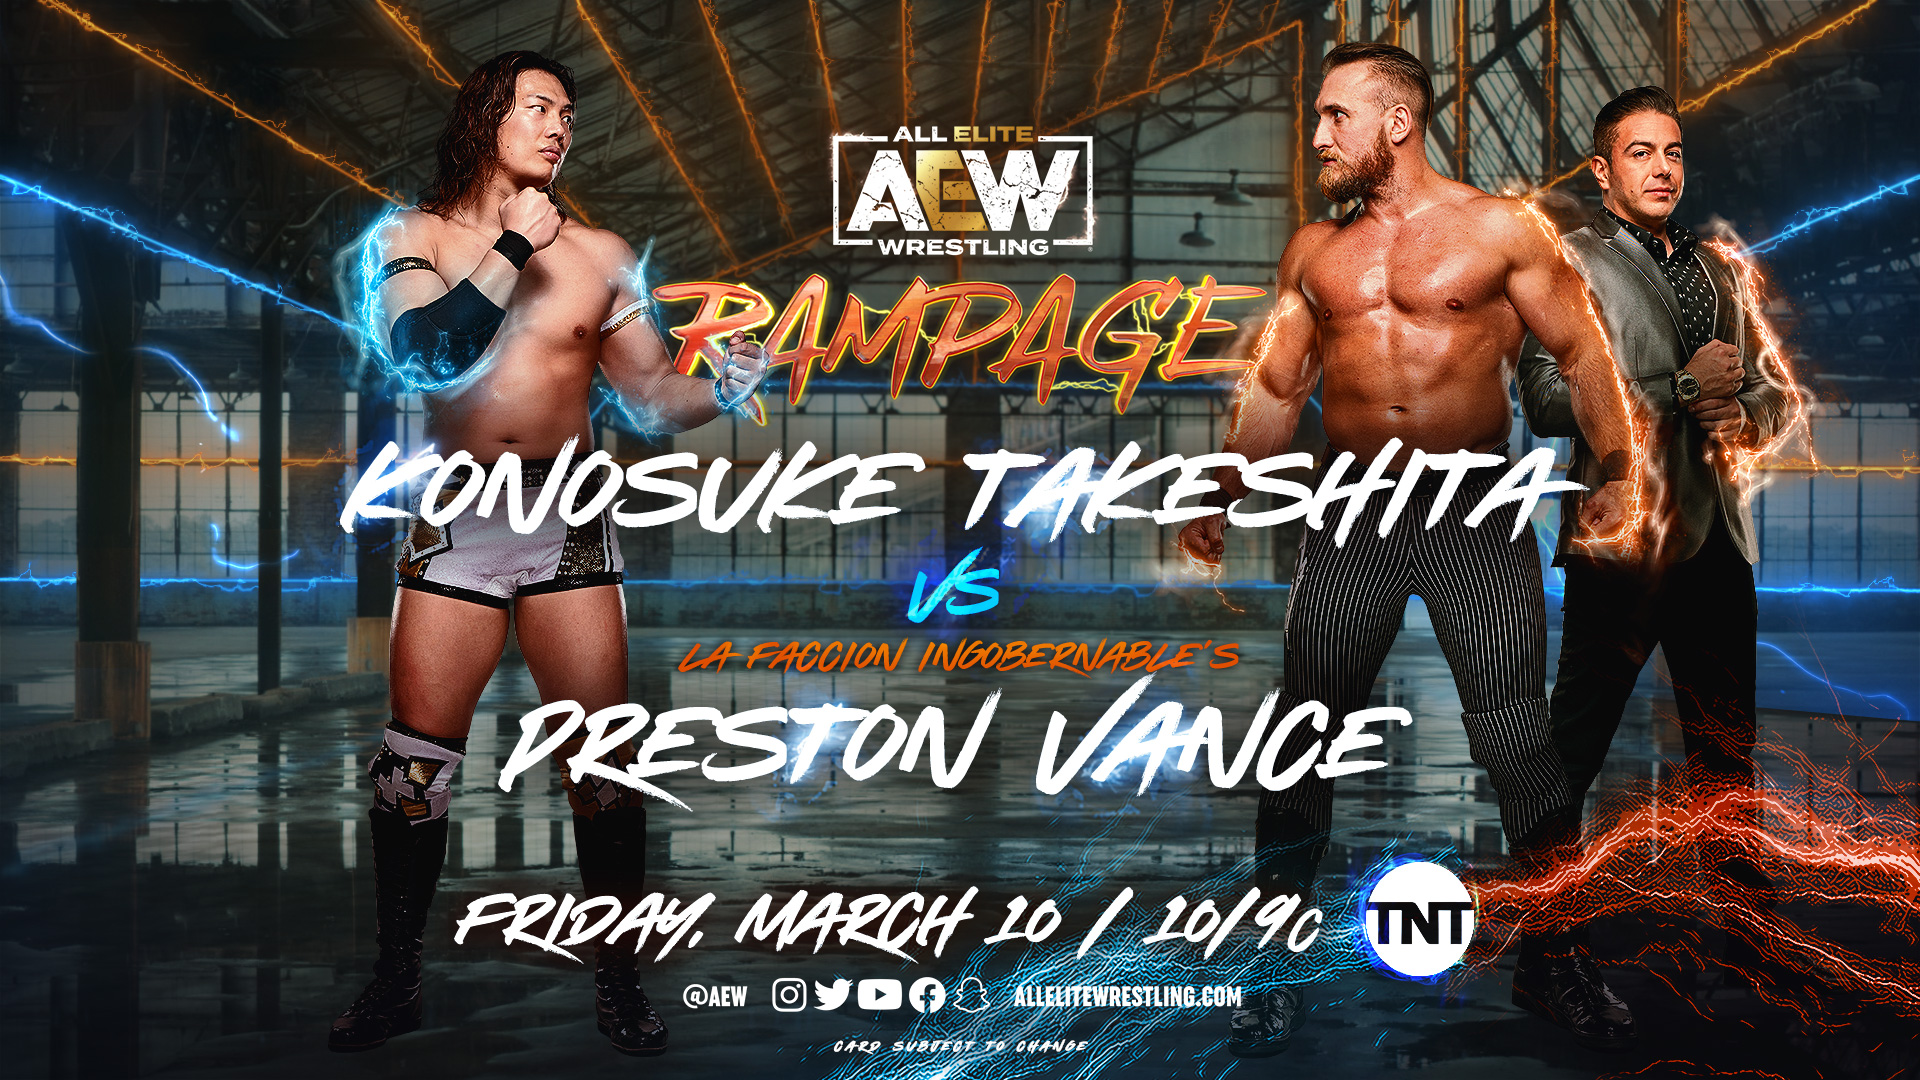 Спойлеры с записей эпизода Rampage за 10 марта; Большой титульный матч назначен на ROH Supercard of Honor